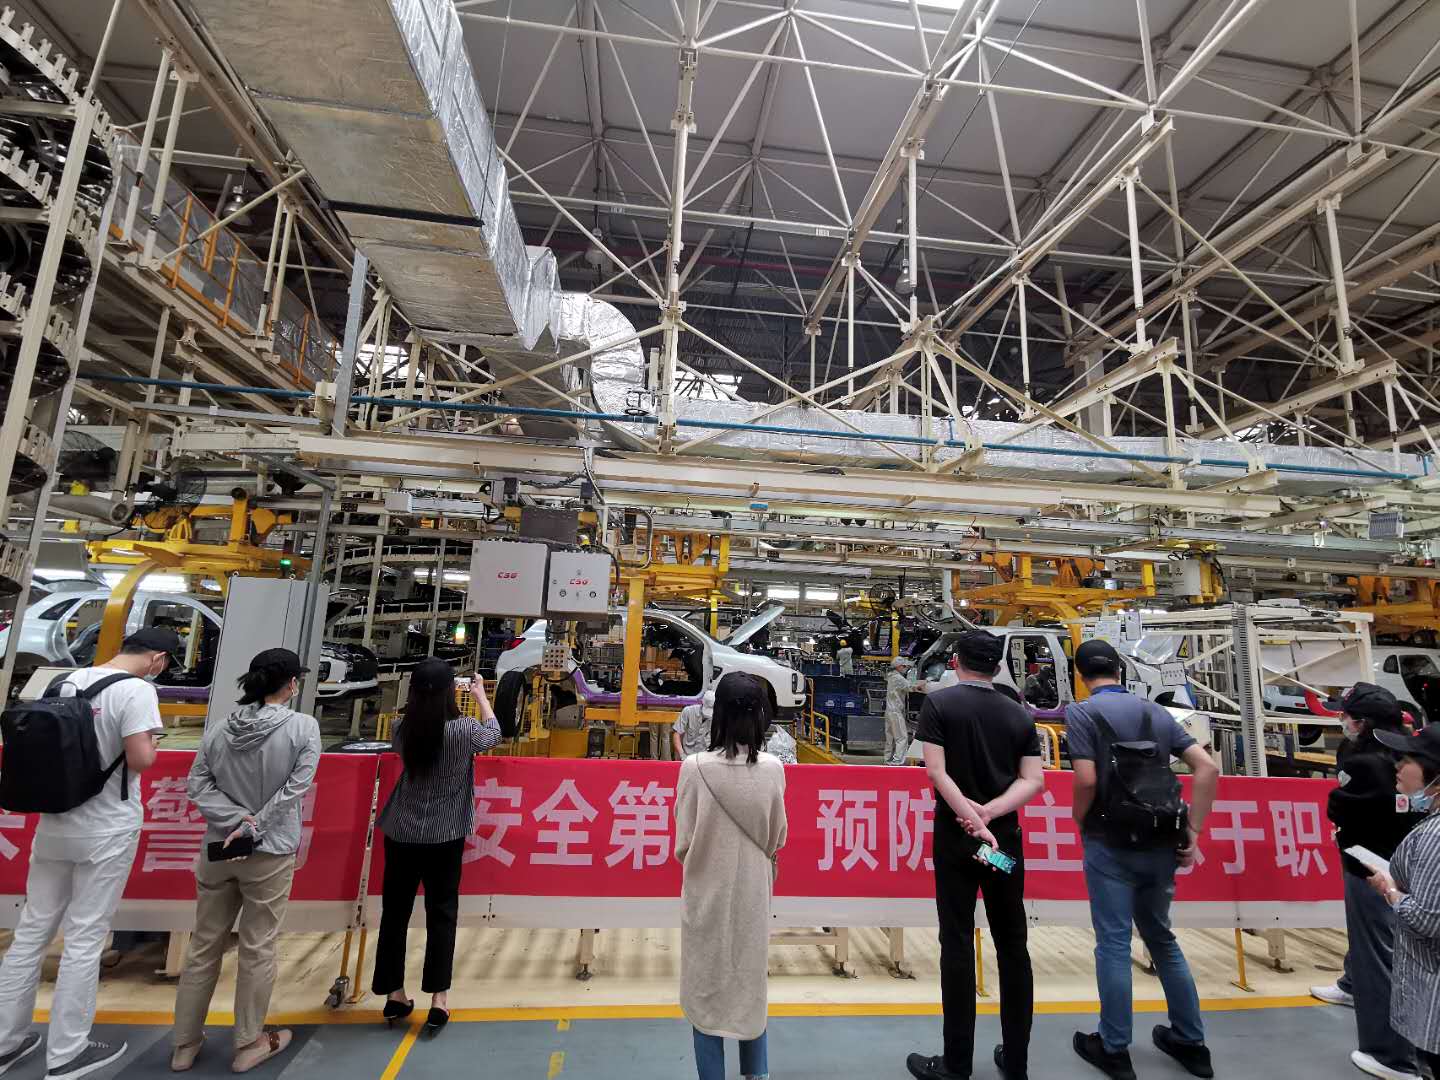 采访团正在探访广汽三菱汽车有限公司生产车间。